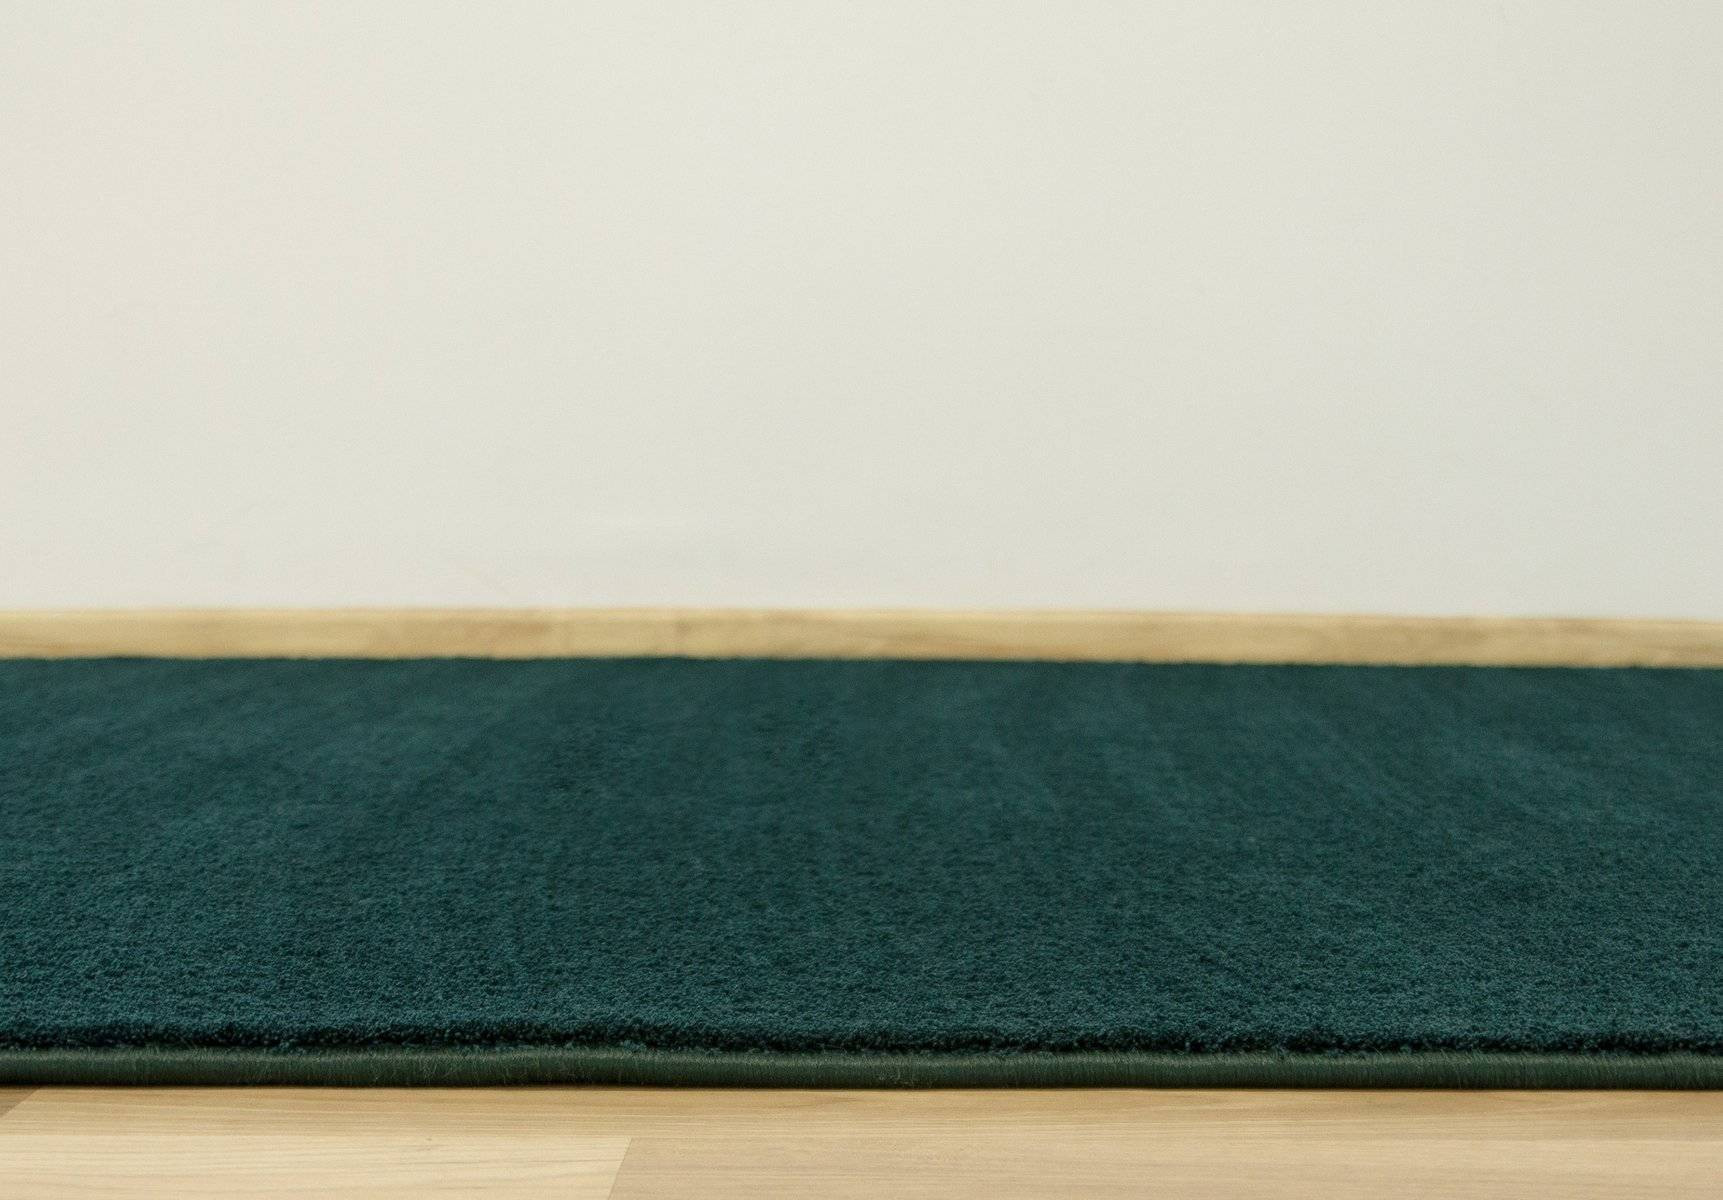 Metrážny koberec Amazing 40 zelený